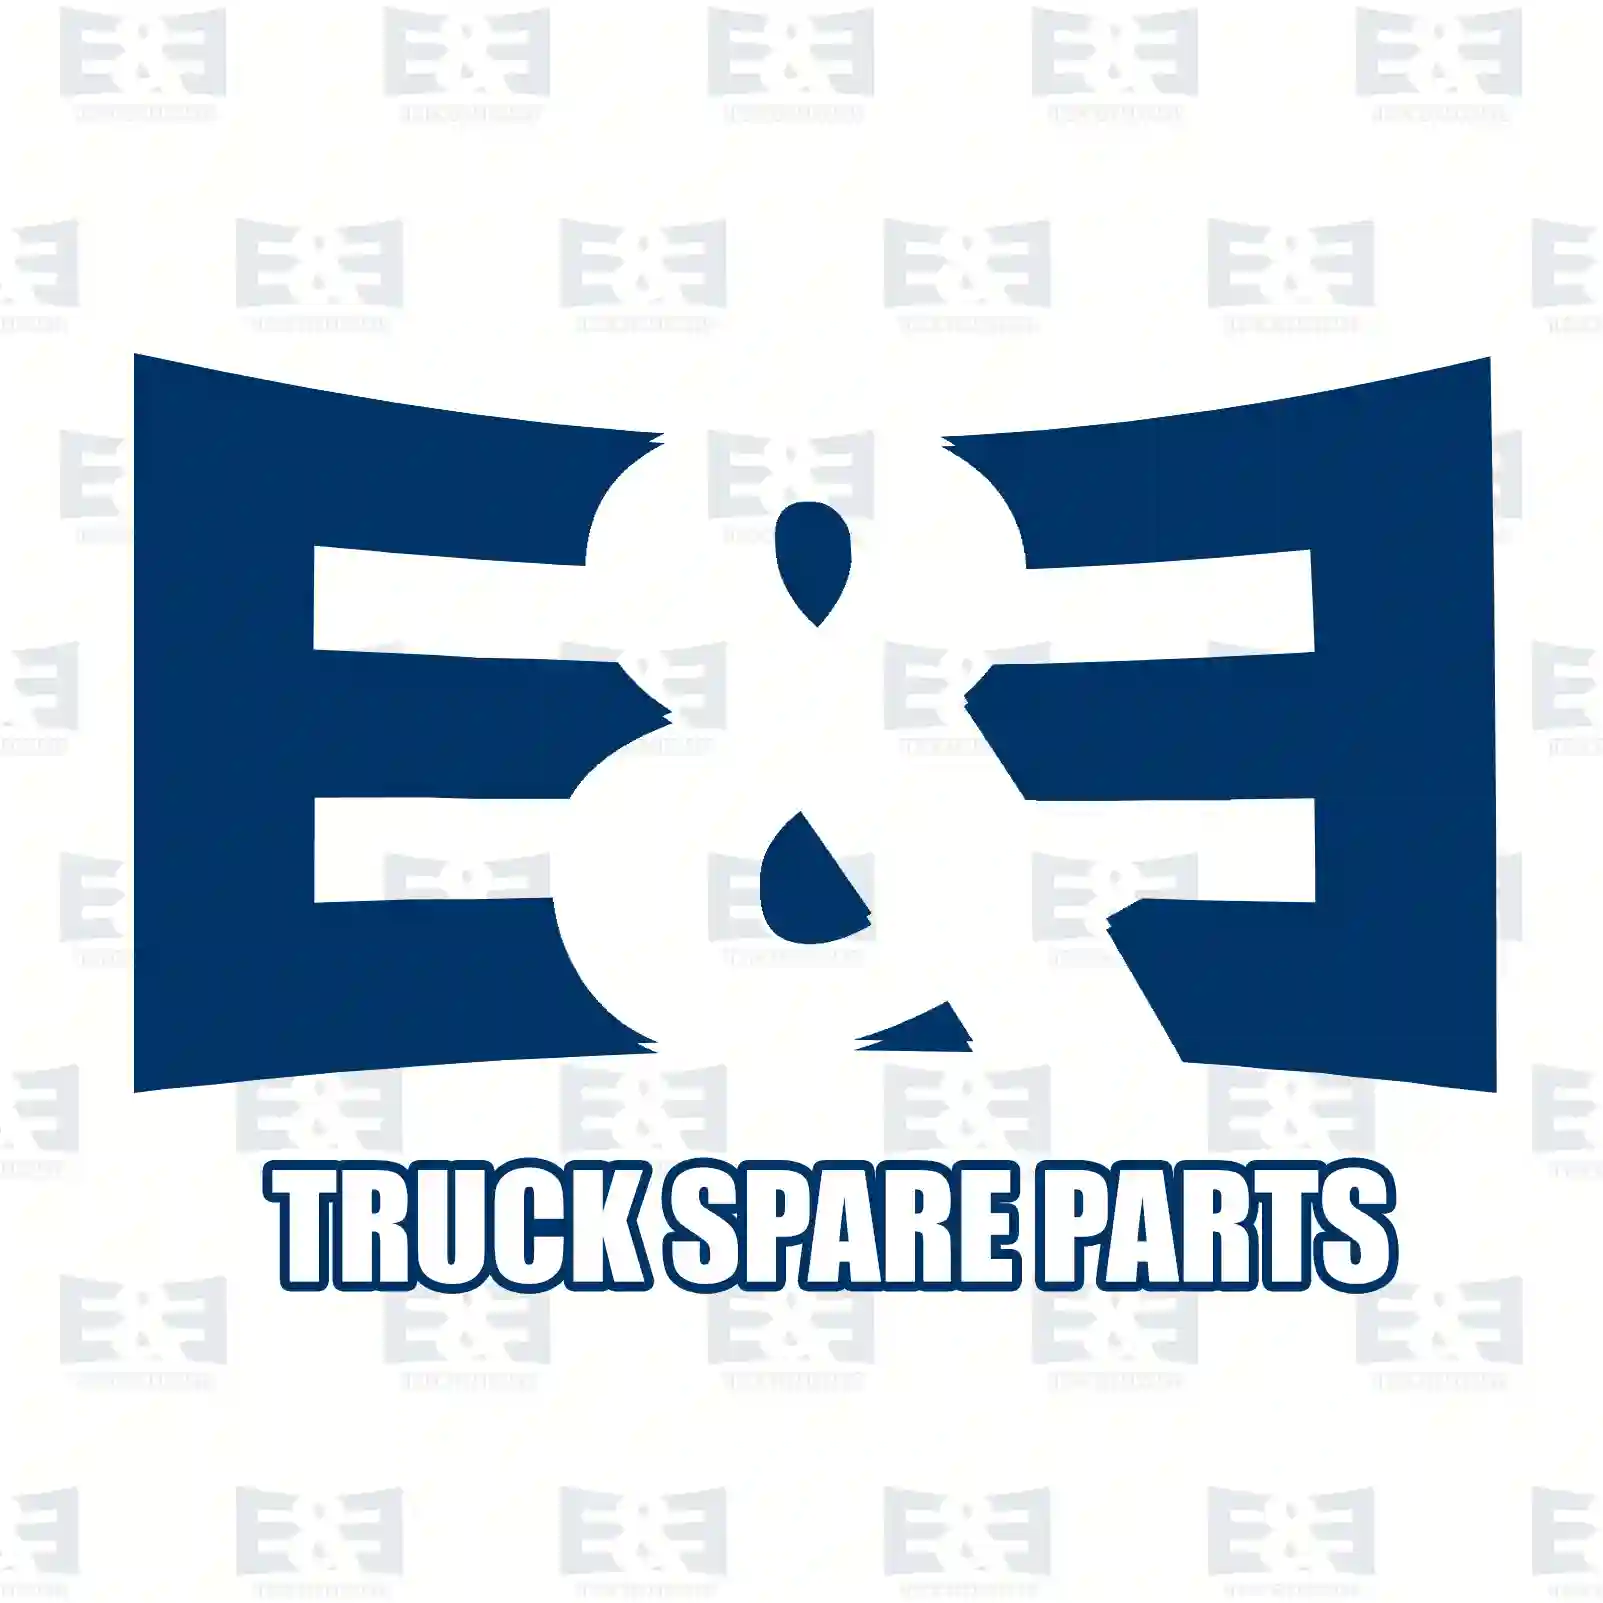  Shim || E&E Truck Spare Parts | Truck Spare Parts, Auotomotive Spare Parts